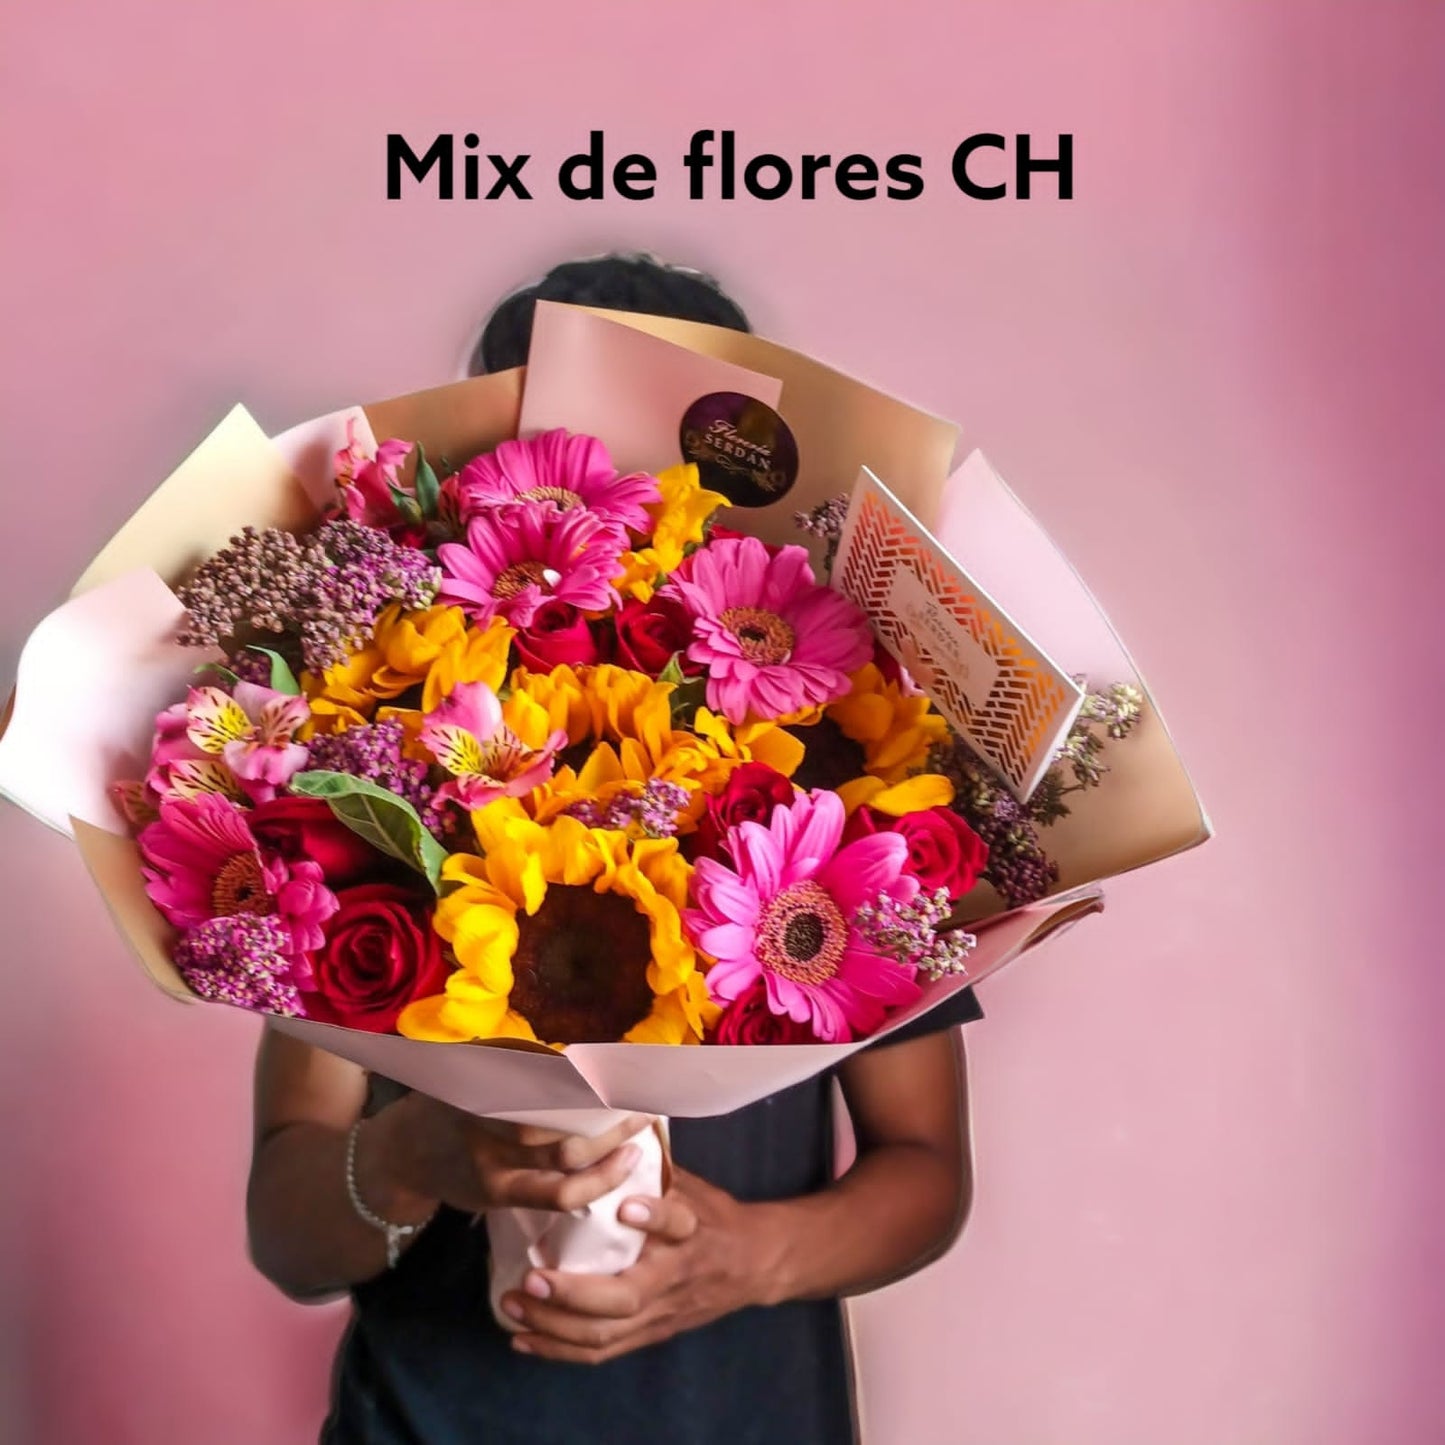 Mix de flores